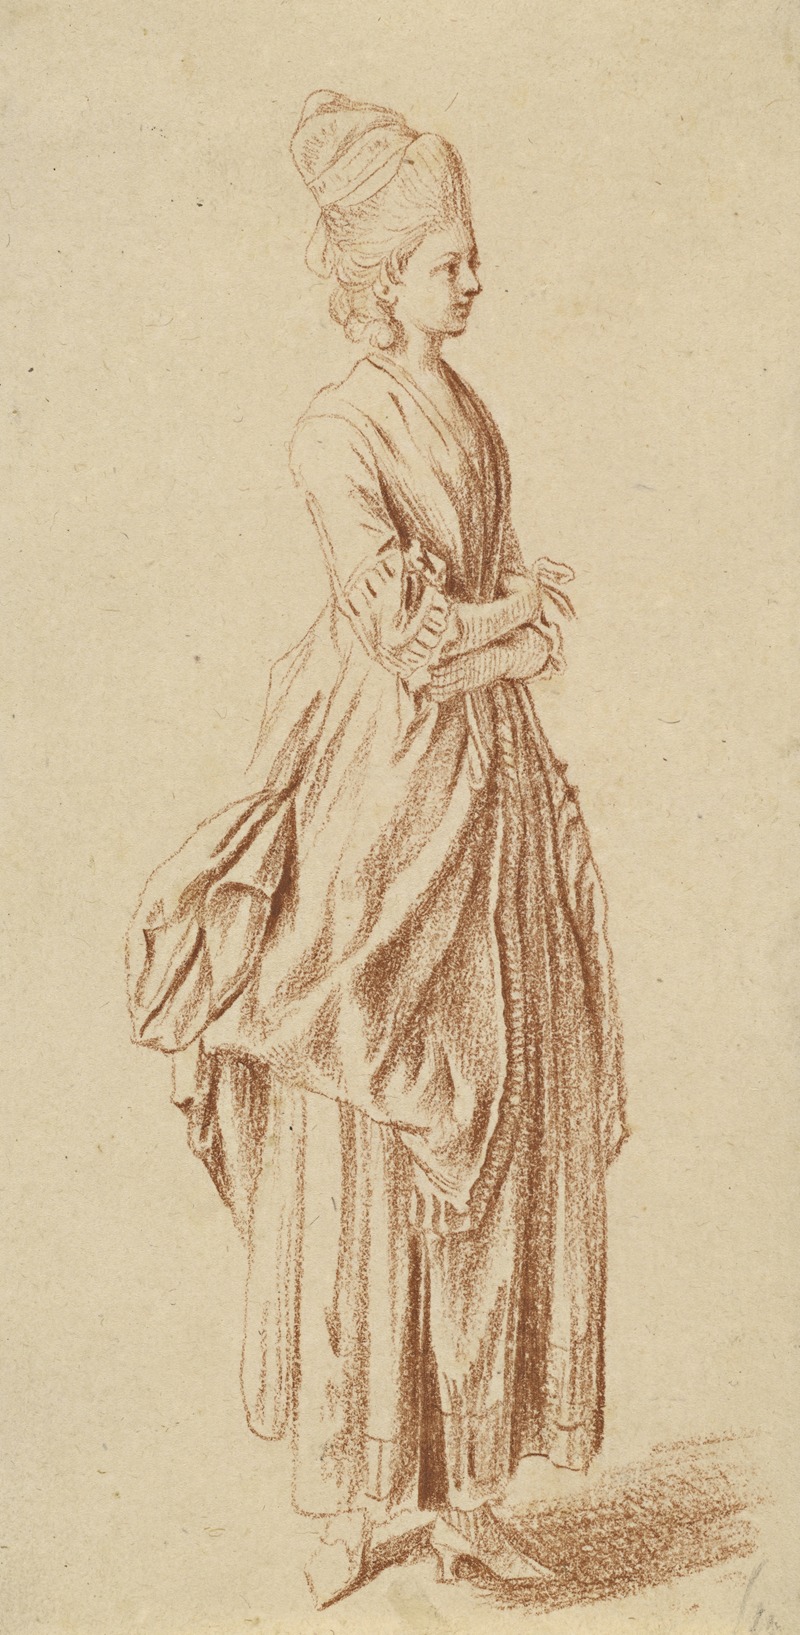 Daniel Nikolaus Chodowiecki - A Standing Lady in a Day Dress